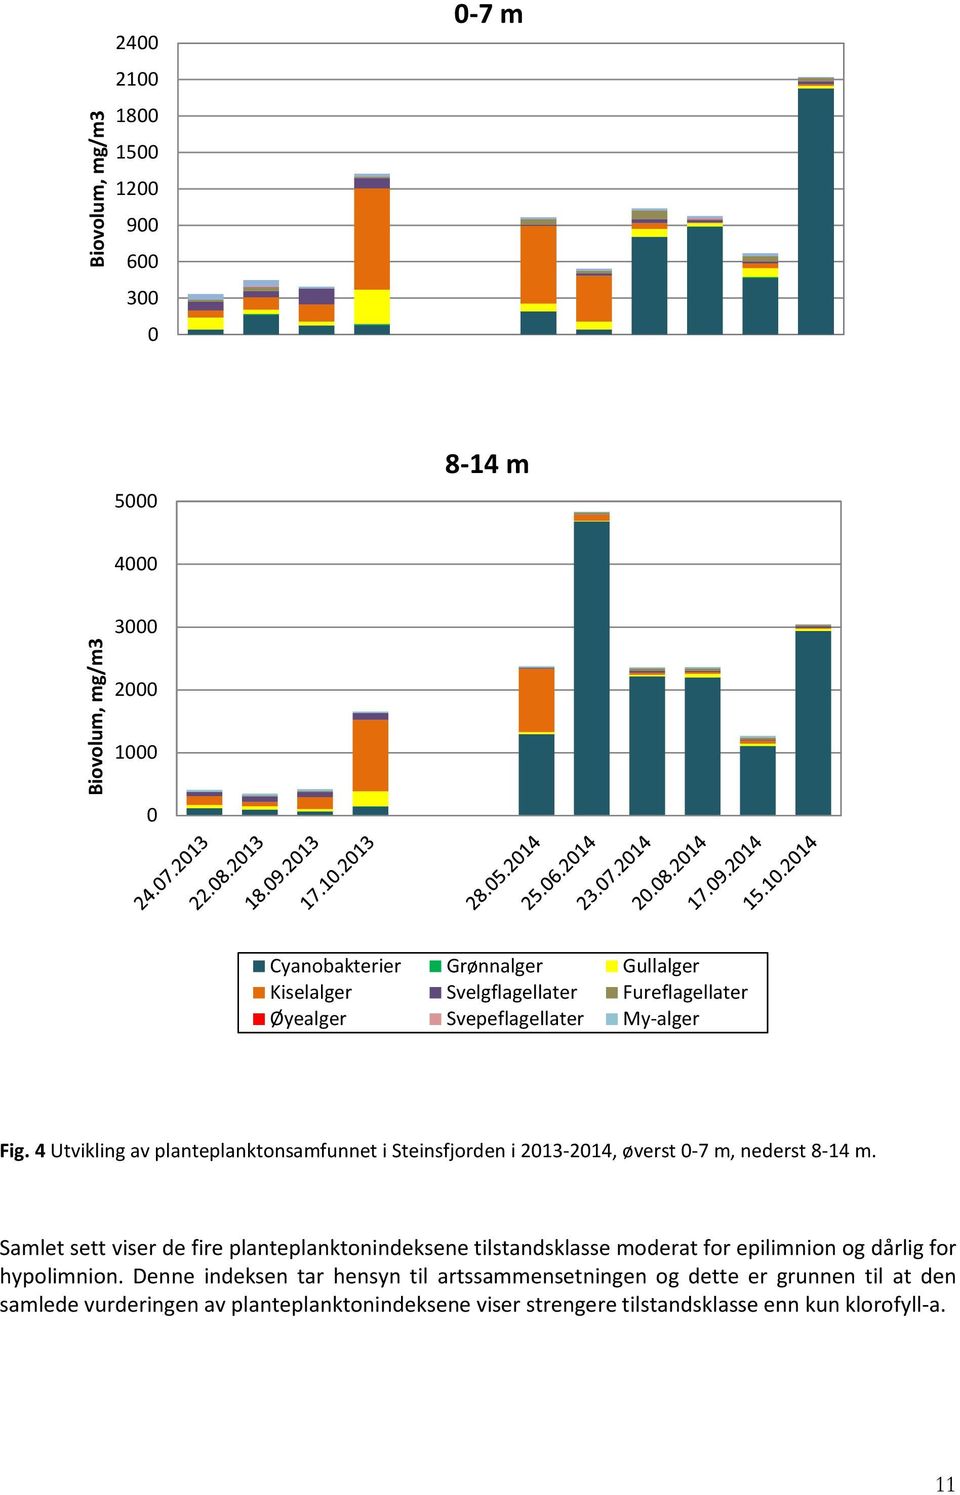 4 Utvikling av planteplanktonsamfunnet i Steinsfjorden i 2013-2014, øverst 0-7 m, nederst 8-14 m.